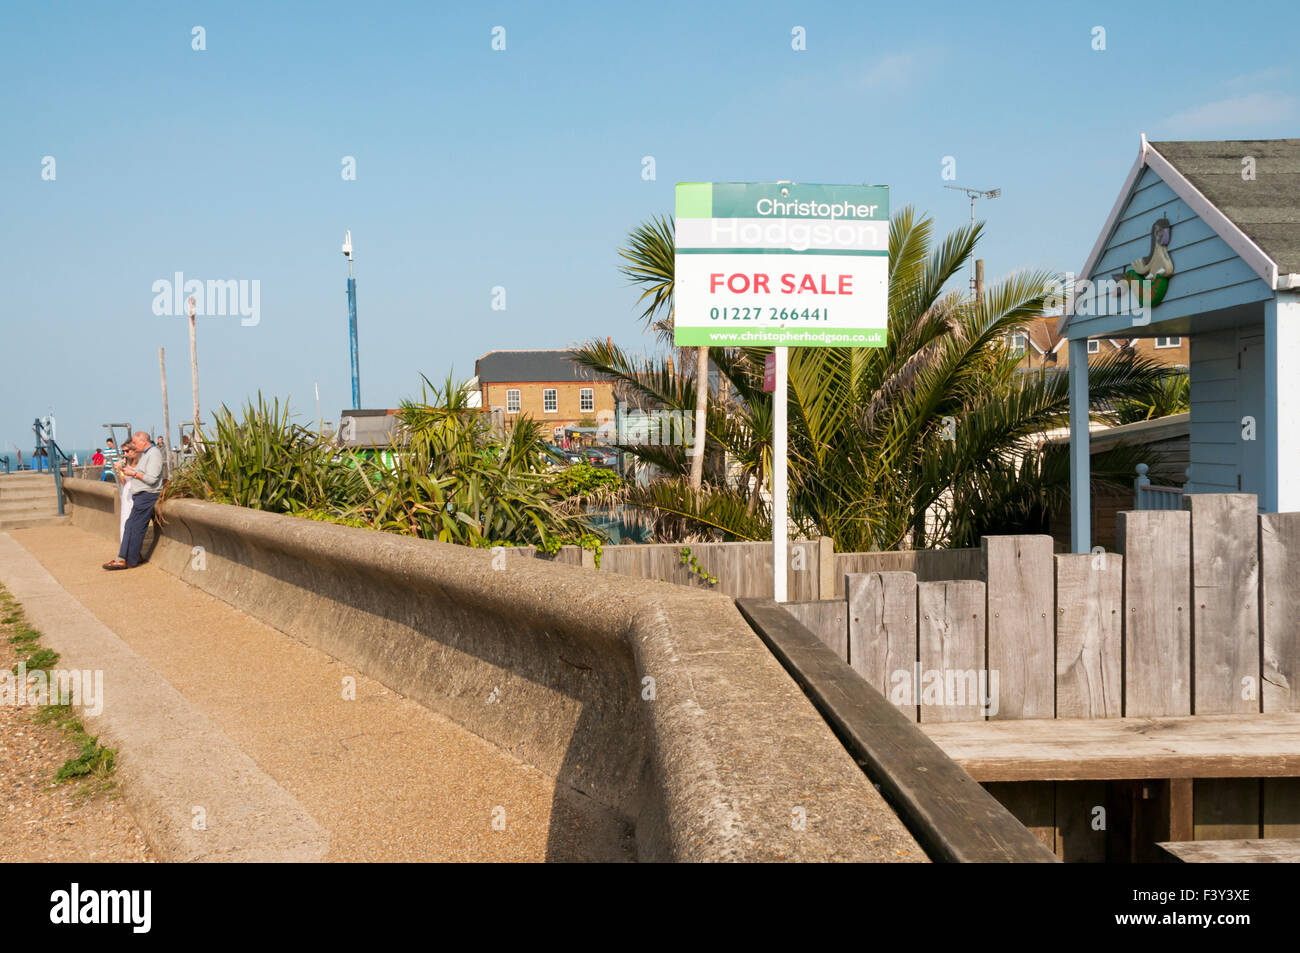 Der Grundbesitz von diesem Whitstable Strandhütte Stand zum Verkauf im Sommer 2015 für £150.000. Stockfoto